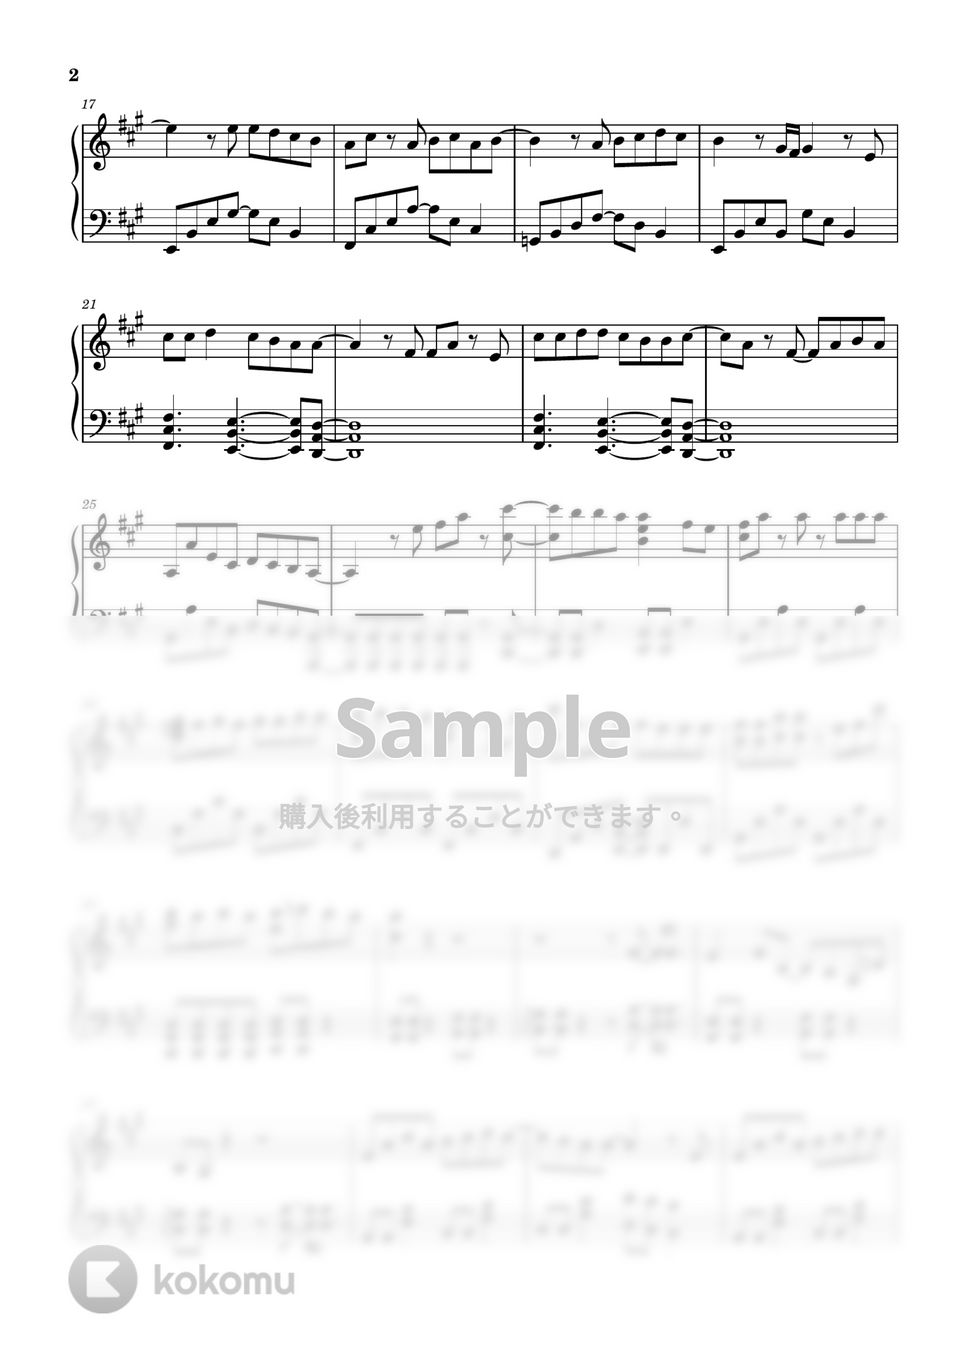 Saucydog - シンデレラボーイ (ピアノ上級ソロ) by pianon